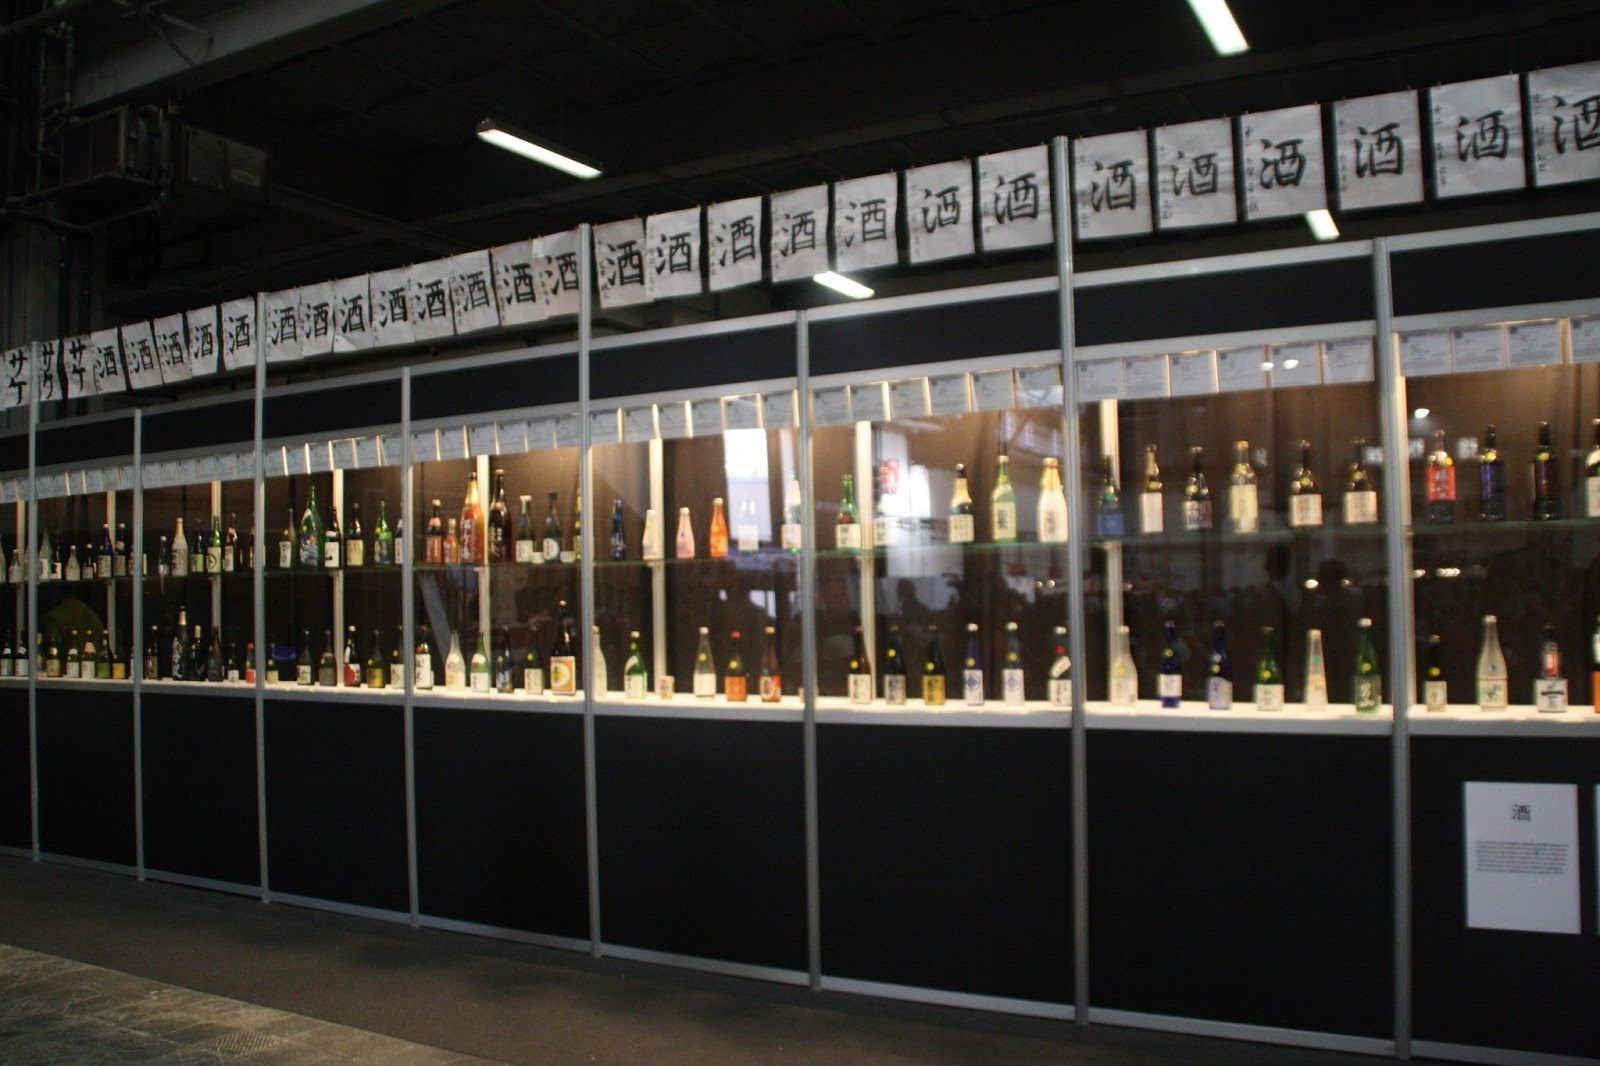 Exposición sobre el sake